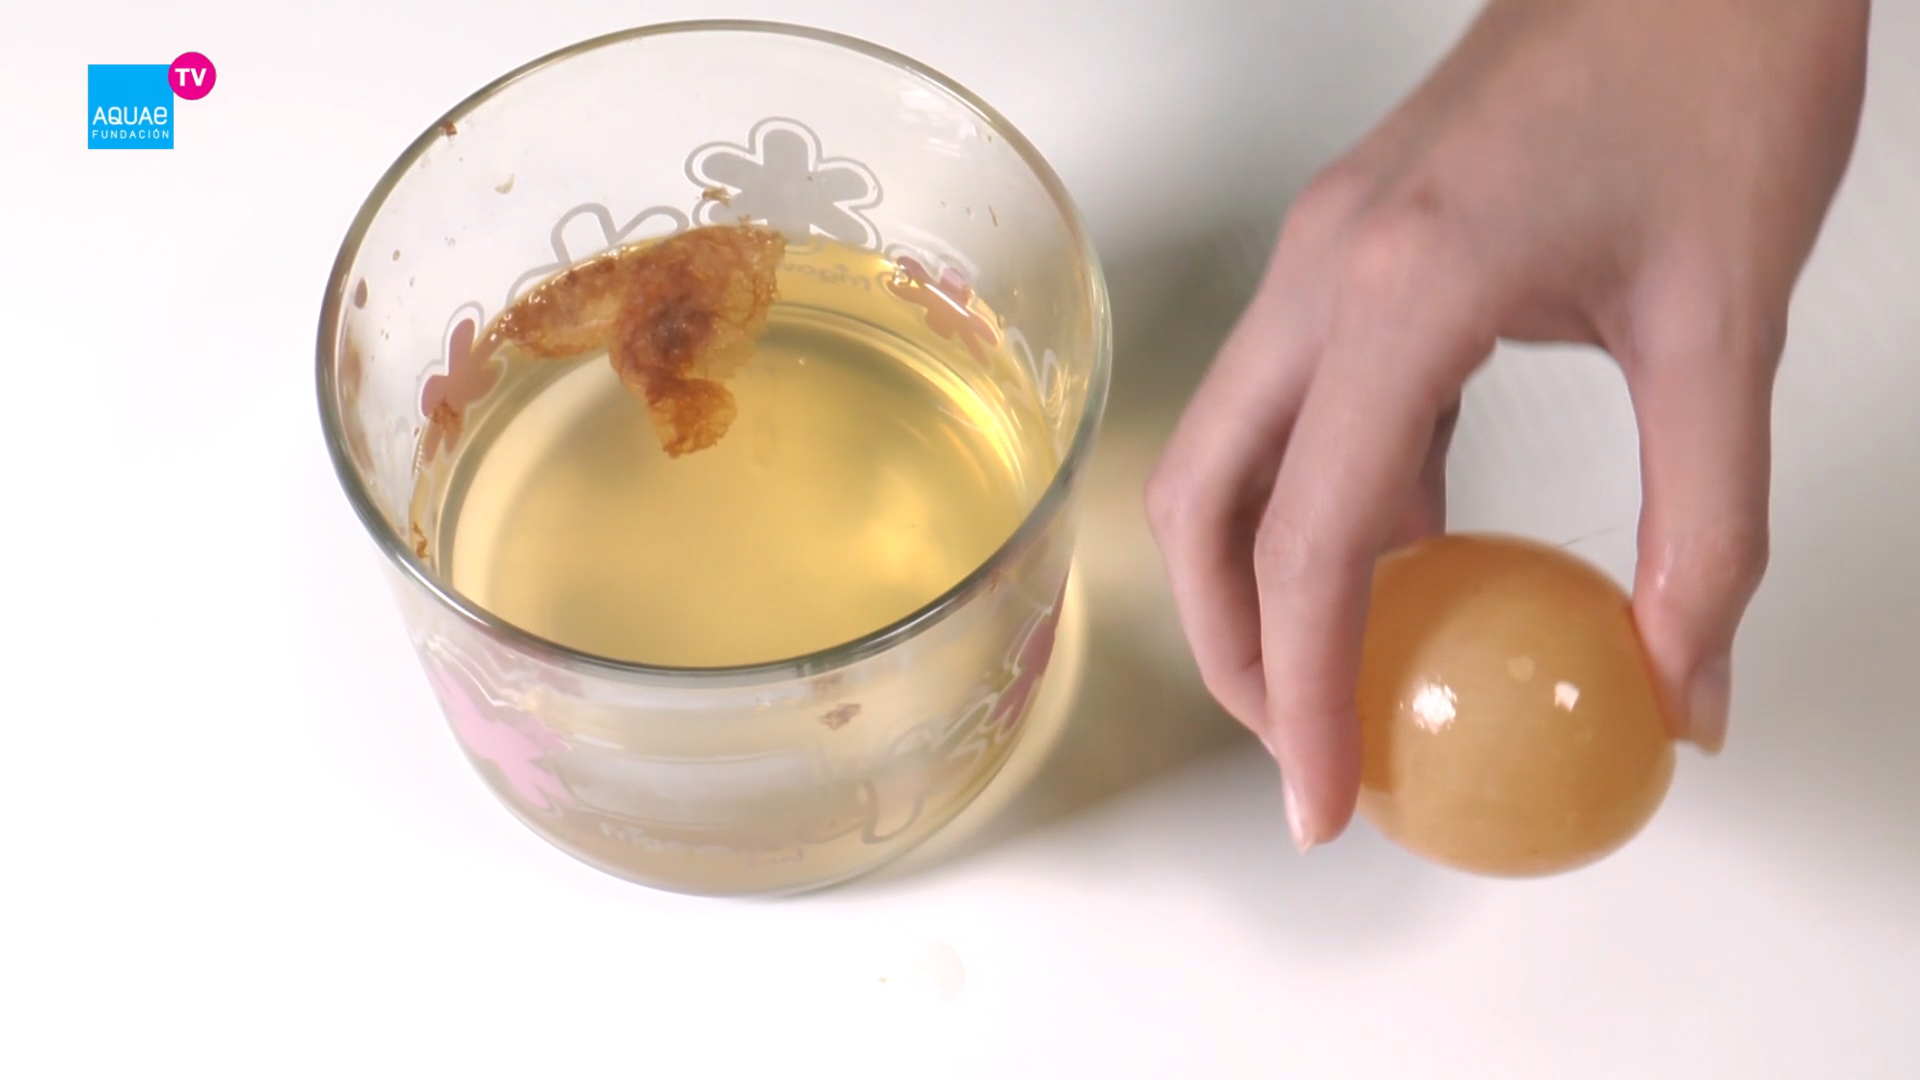 Qué pasa si metes un huevo en un vaso con vinagre?